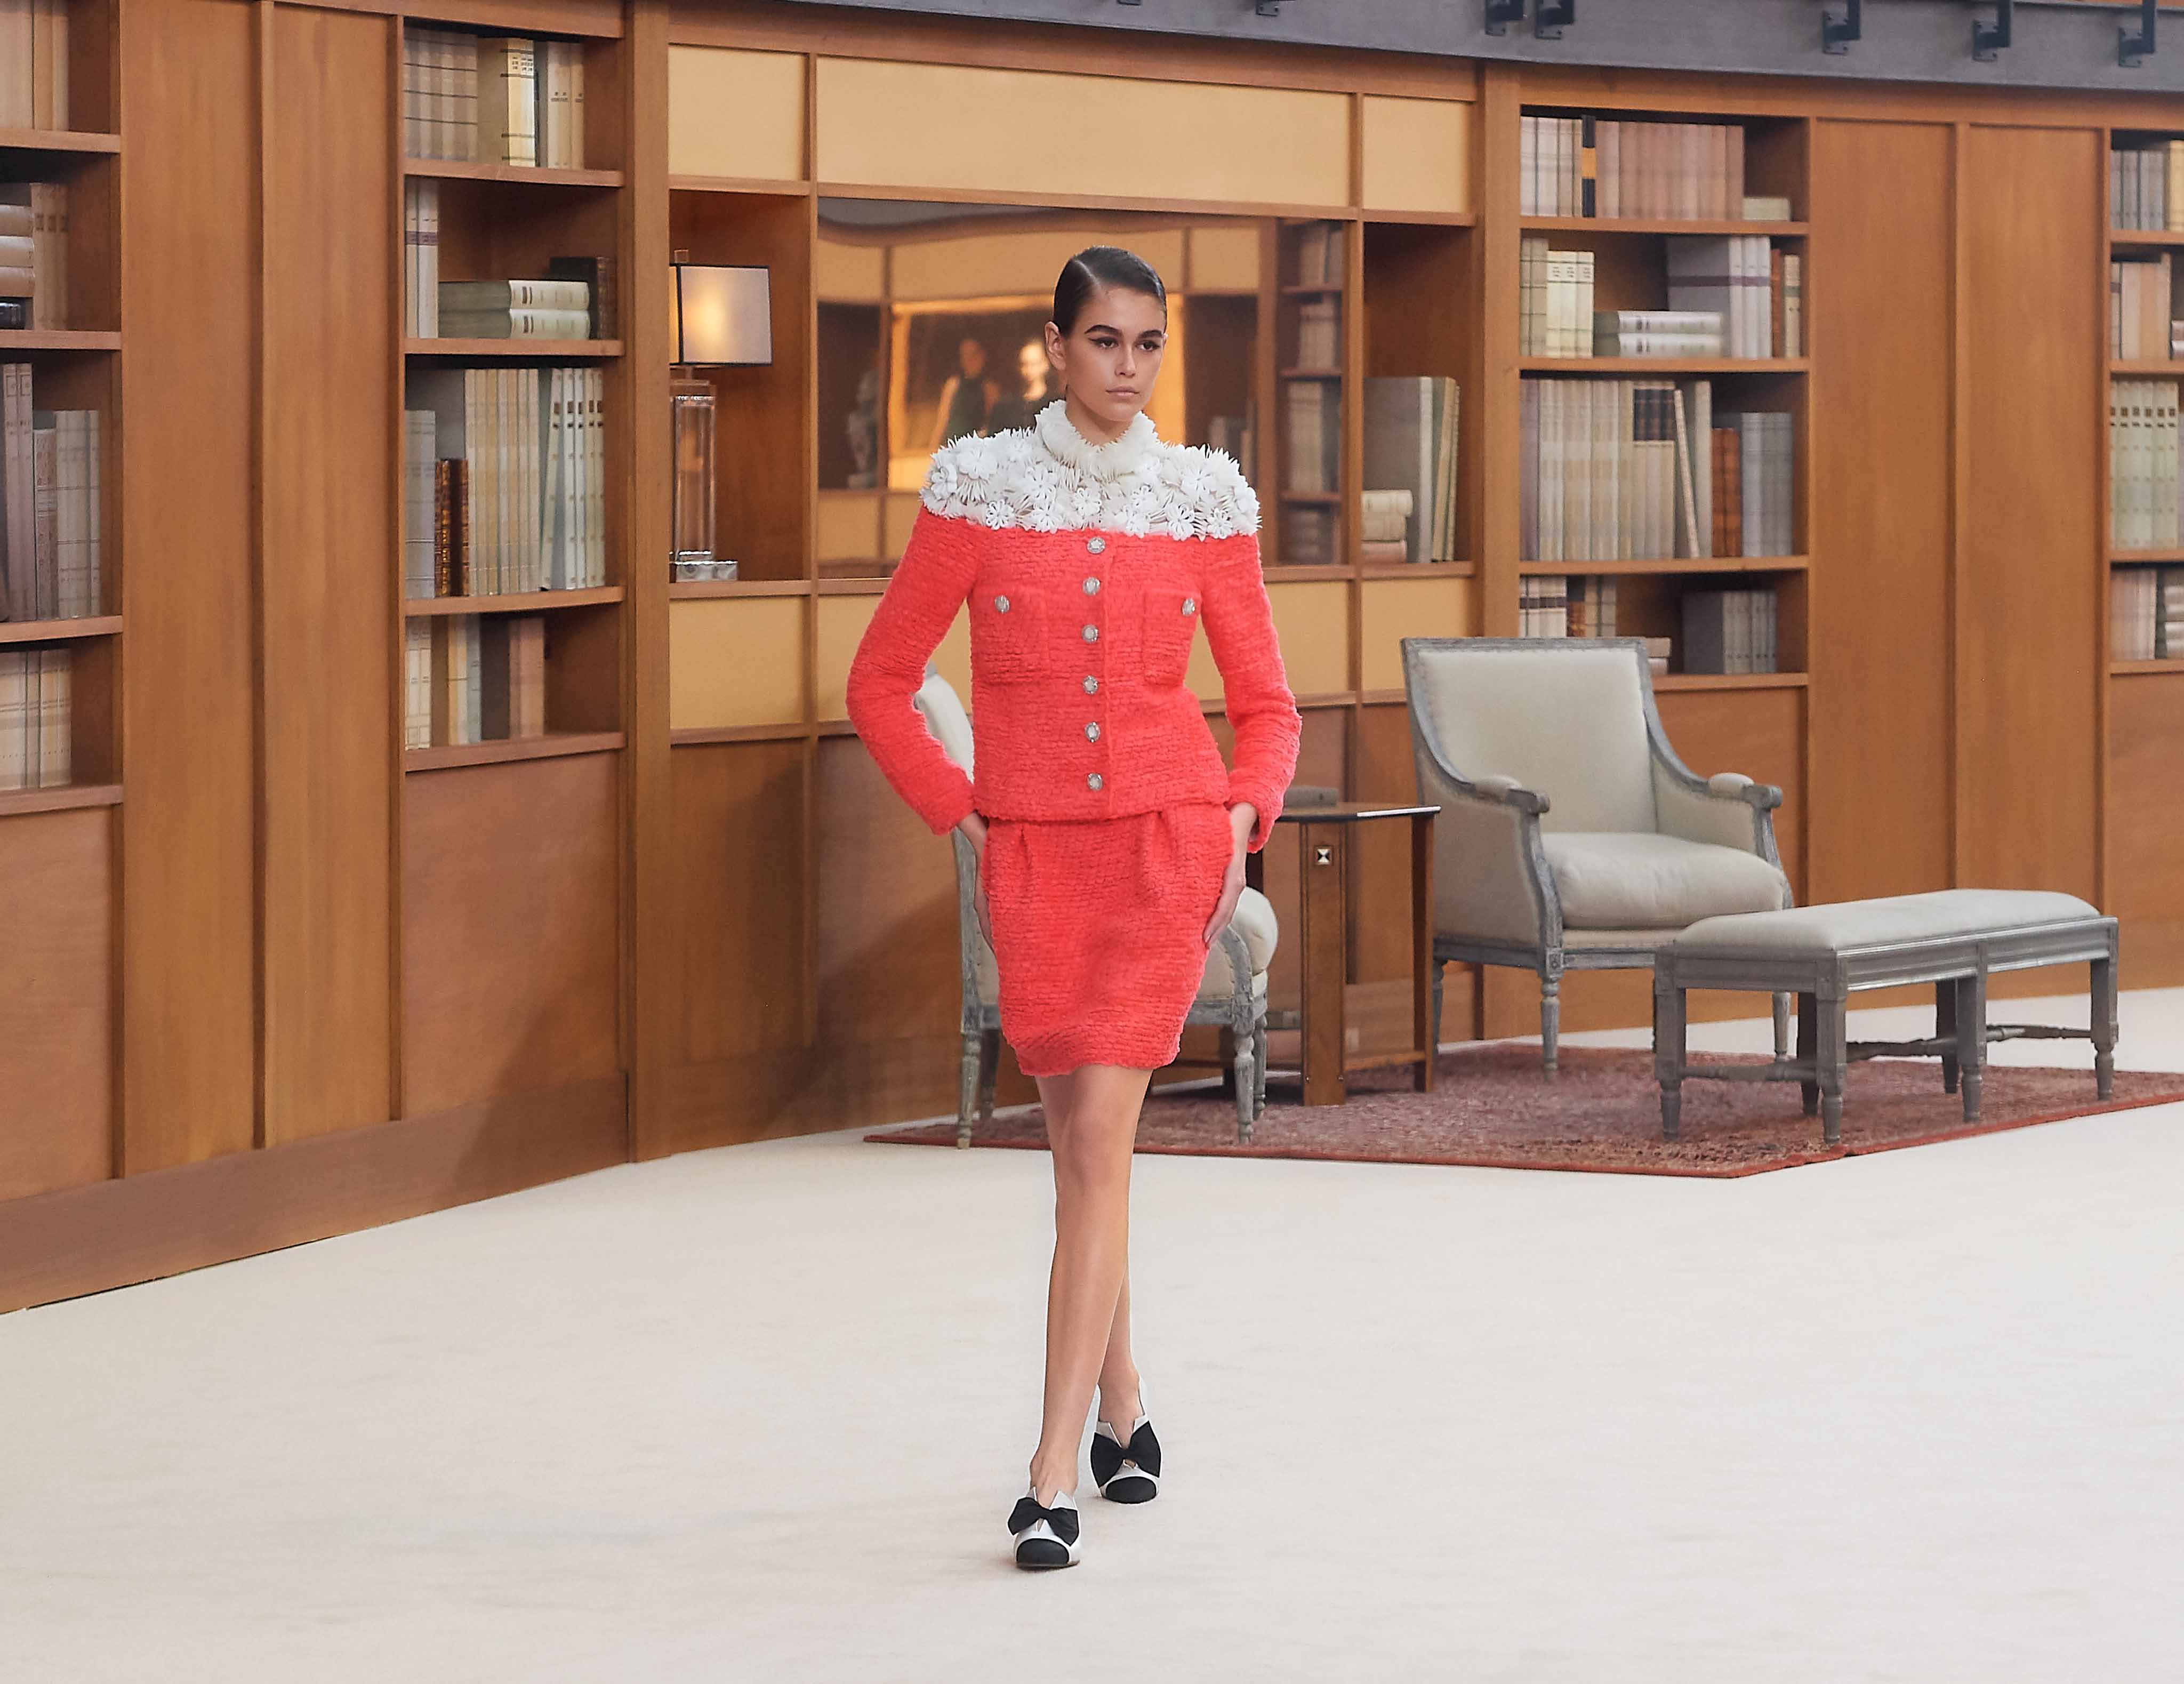 kaia gerber skirt suit màu cam chanel haute couture 2019